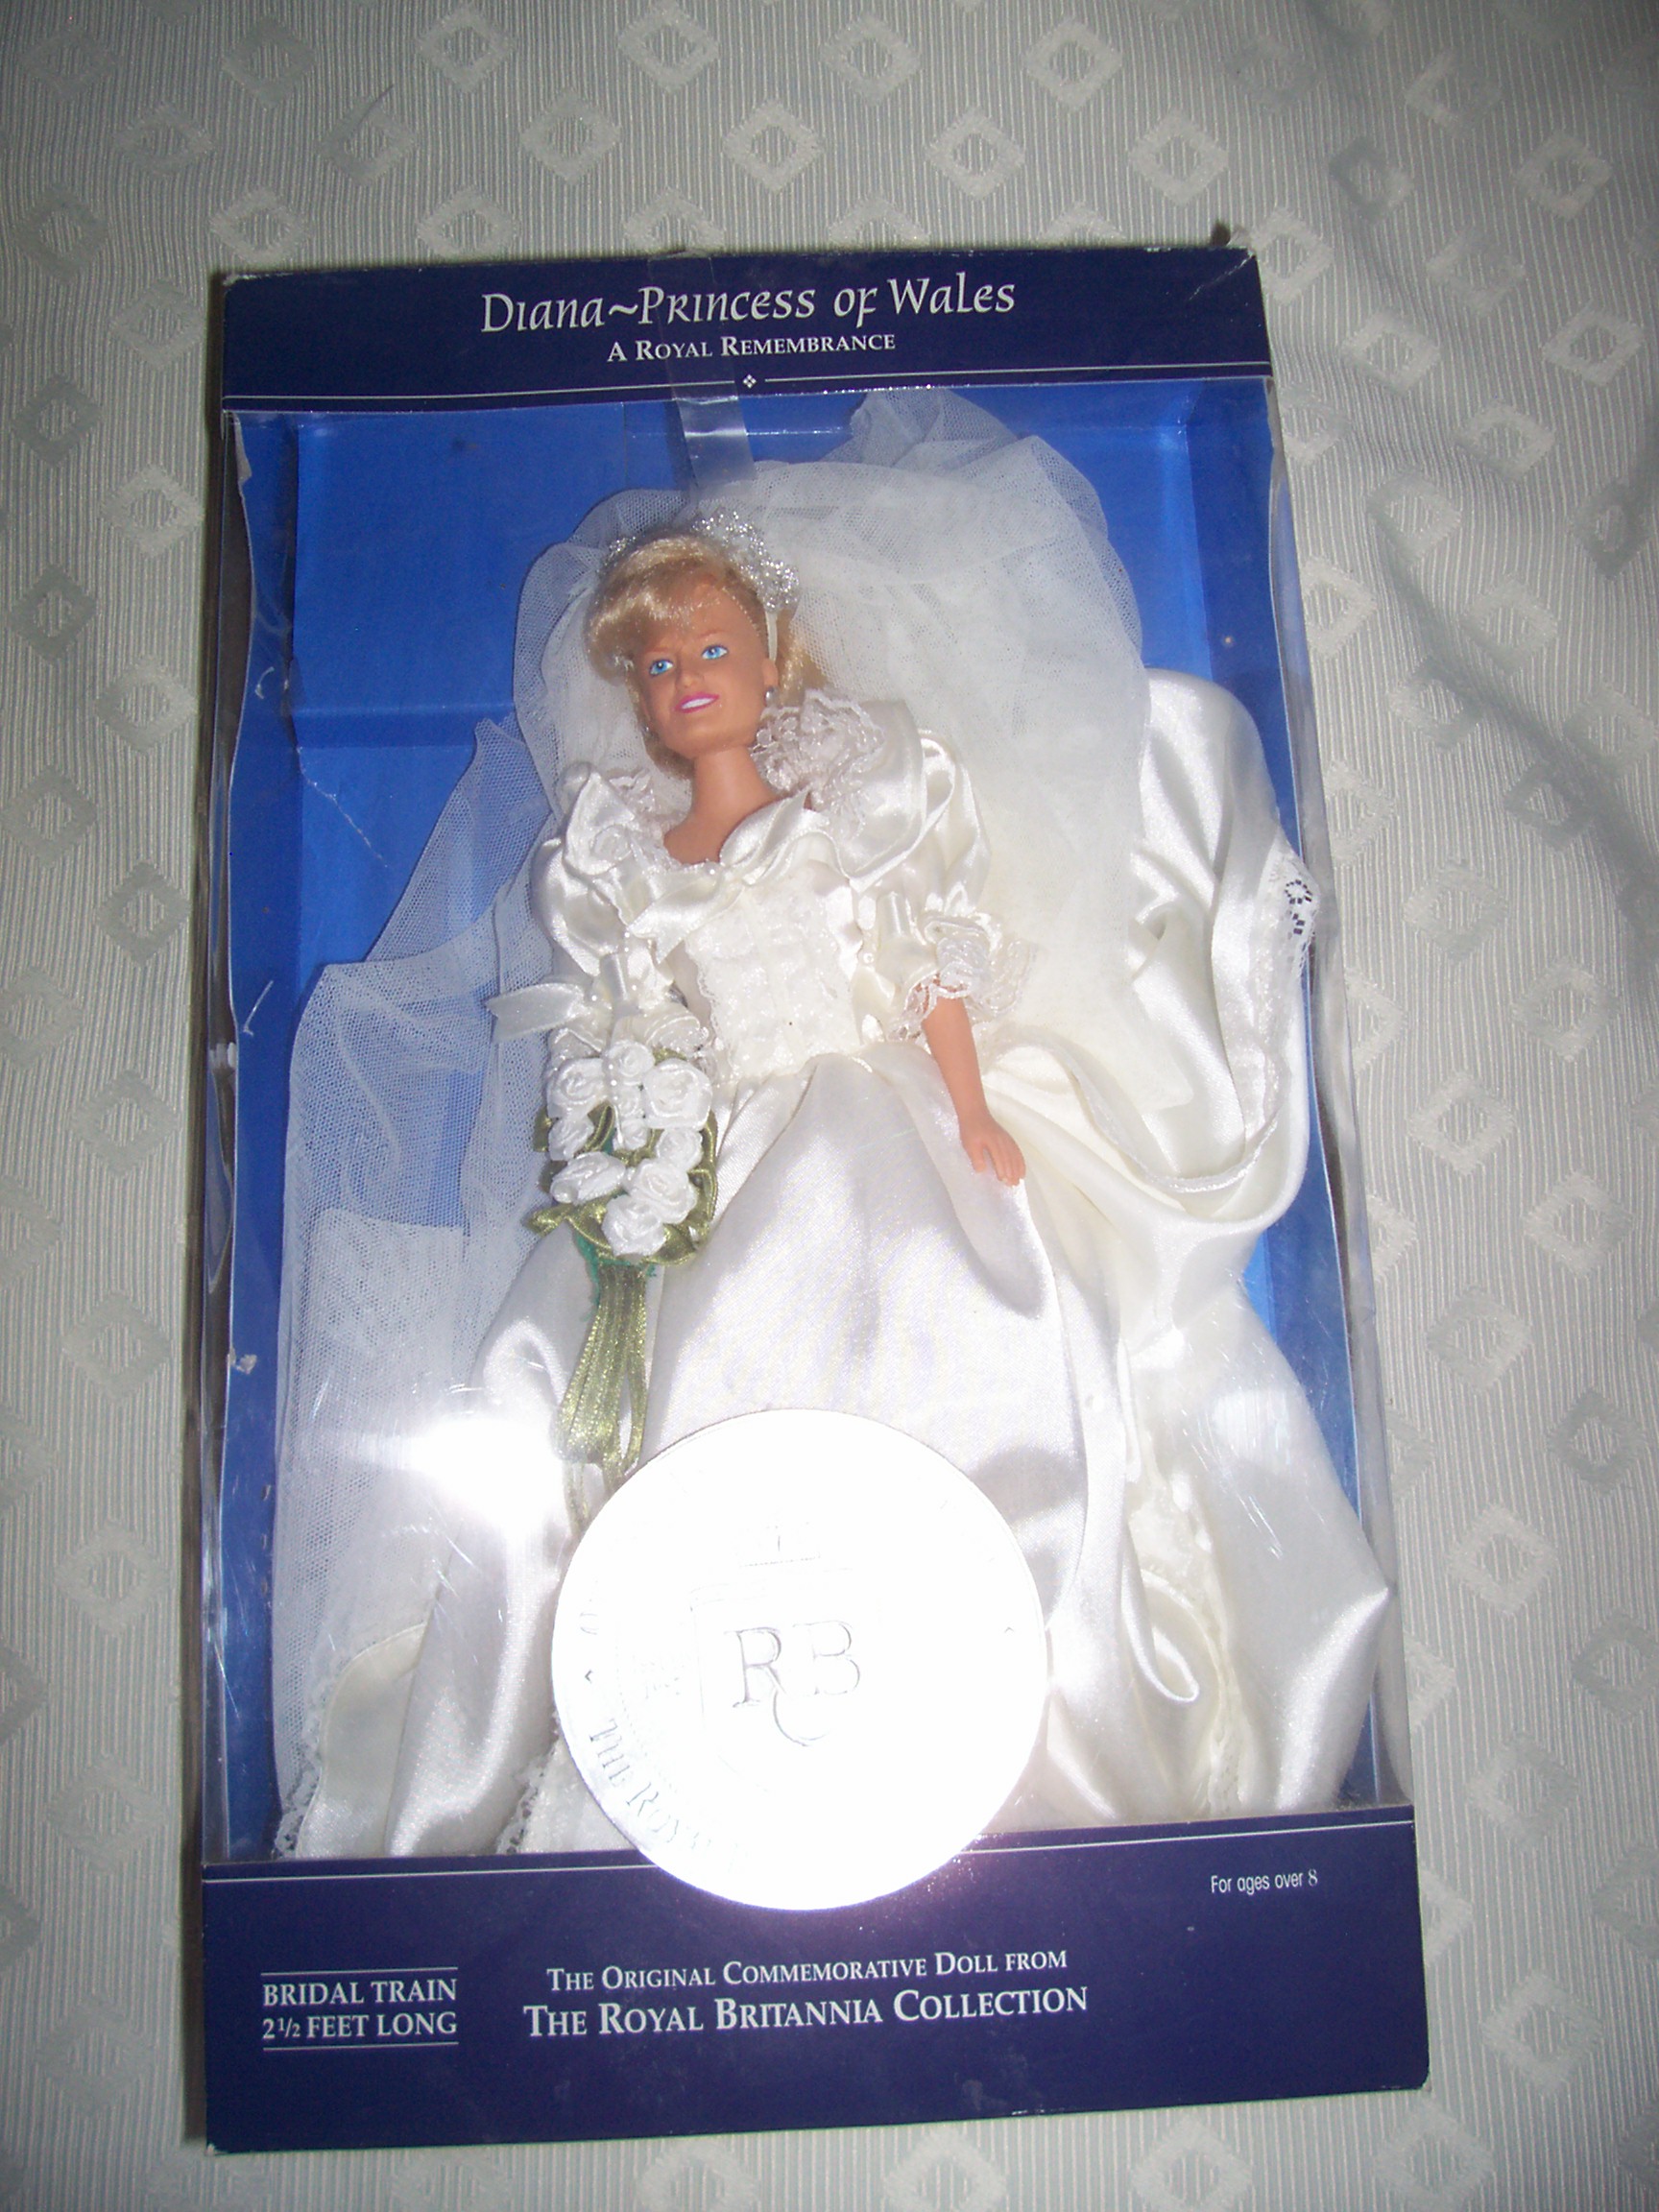 Royal Brittannia Collection Bride Princess Diana